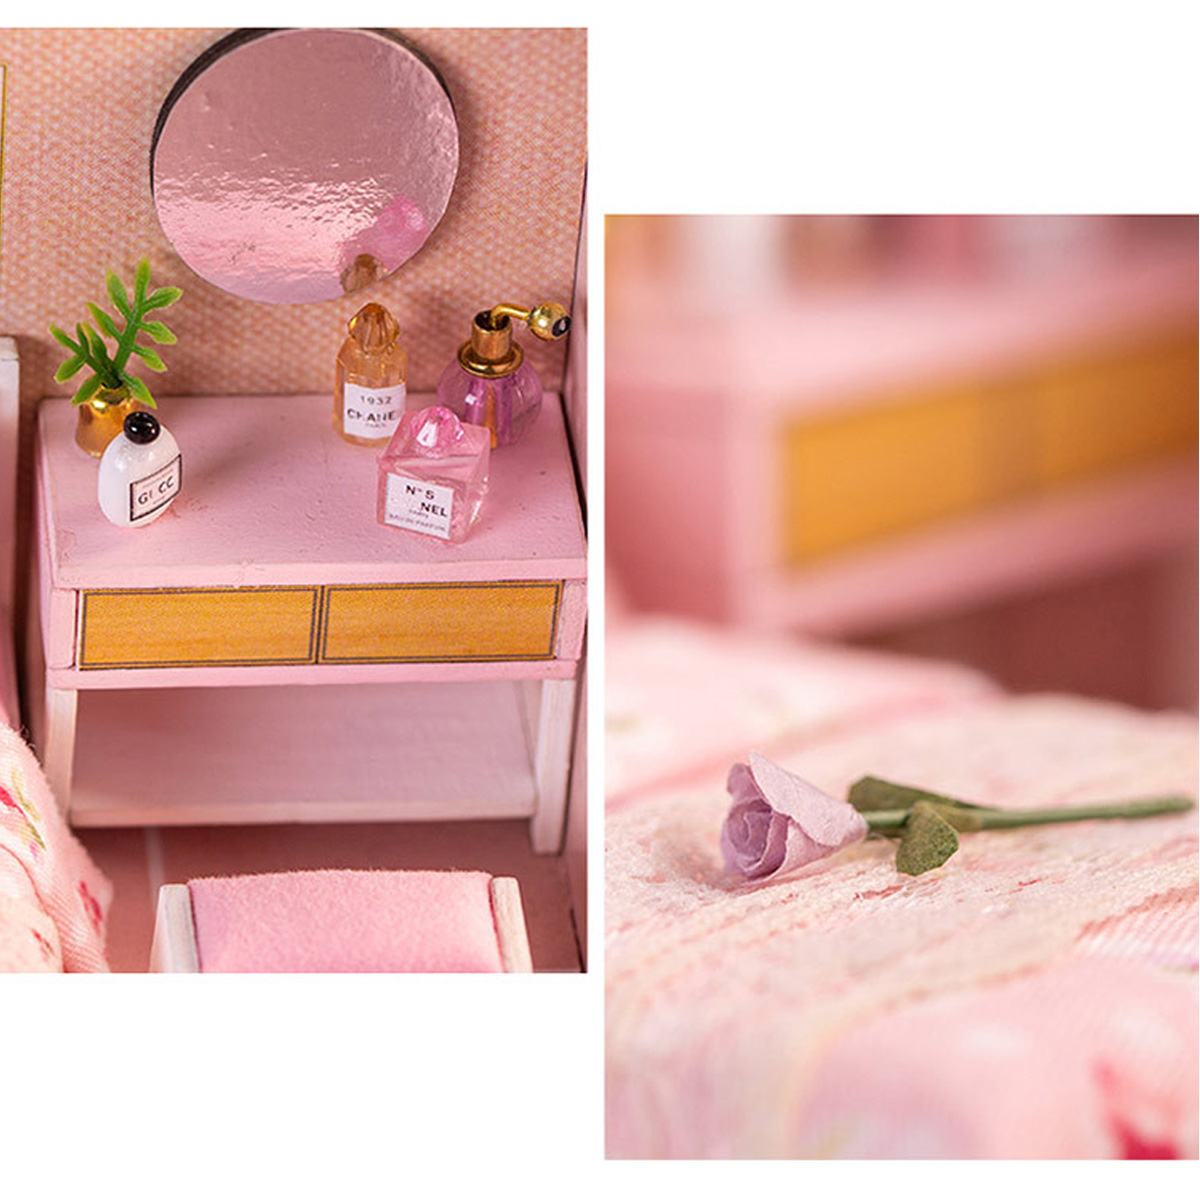 DIY-Creative-Handmade-House-Educational-Toys-Girl-Heart-Birthday-Gift-Doll-House-1635958-7